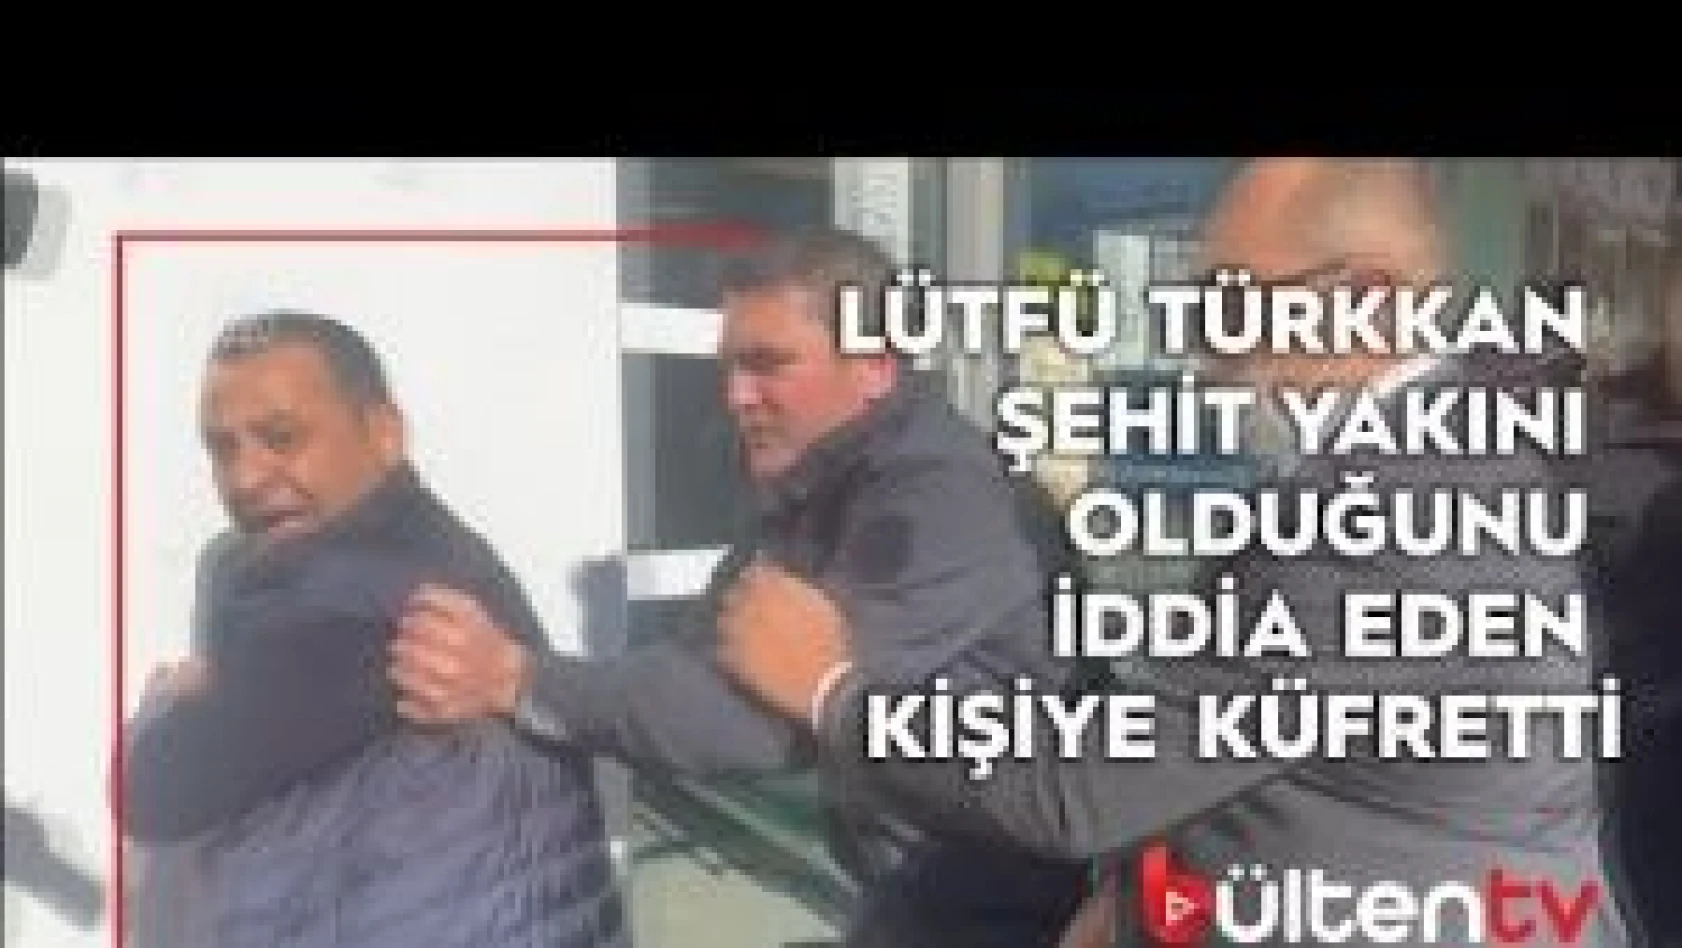 Lütfü Türkkan şehit yakını olduğunu iddia eden kişiye küfretti